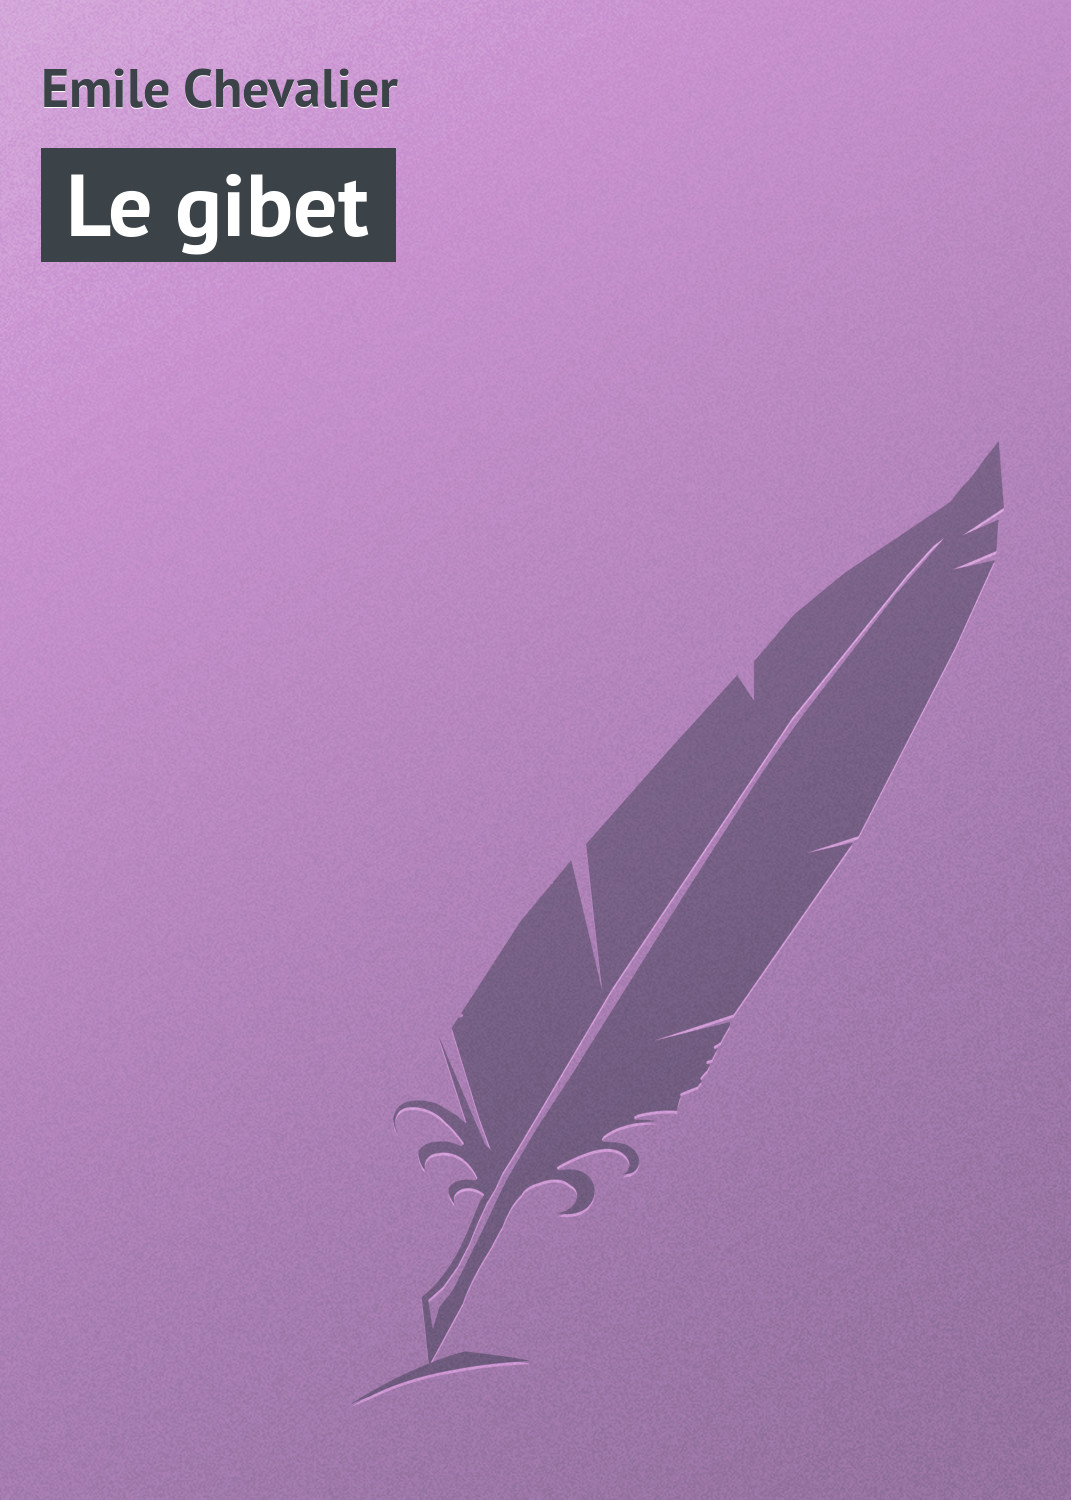 Книга Le gibet из серии , созданная Emile Chevalier, может относится к жанру Зарубежная старинная литература, Зарубежная классика. Стоимость электронной книги Le gibet с идентификатором 21104926 составляет 5.99 руб.